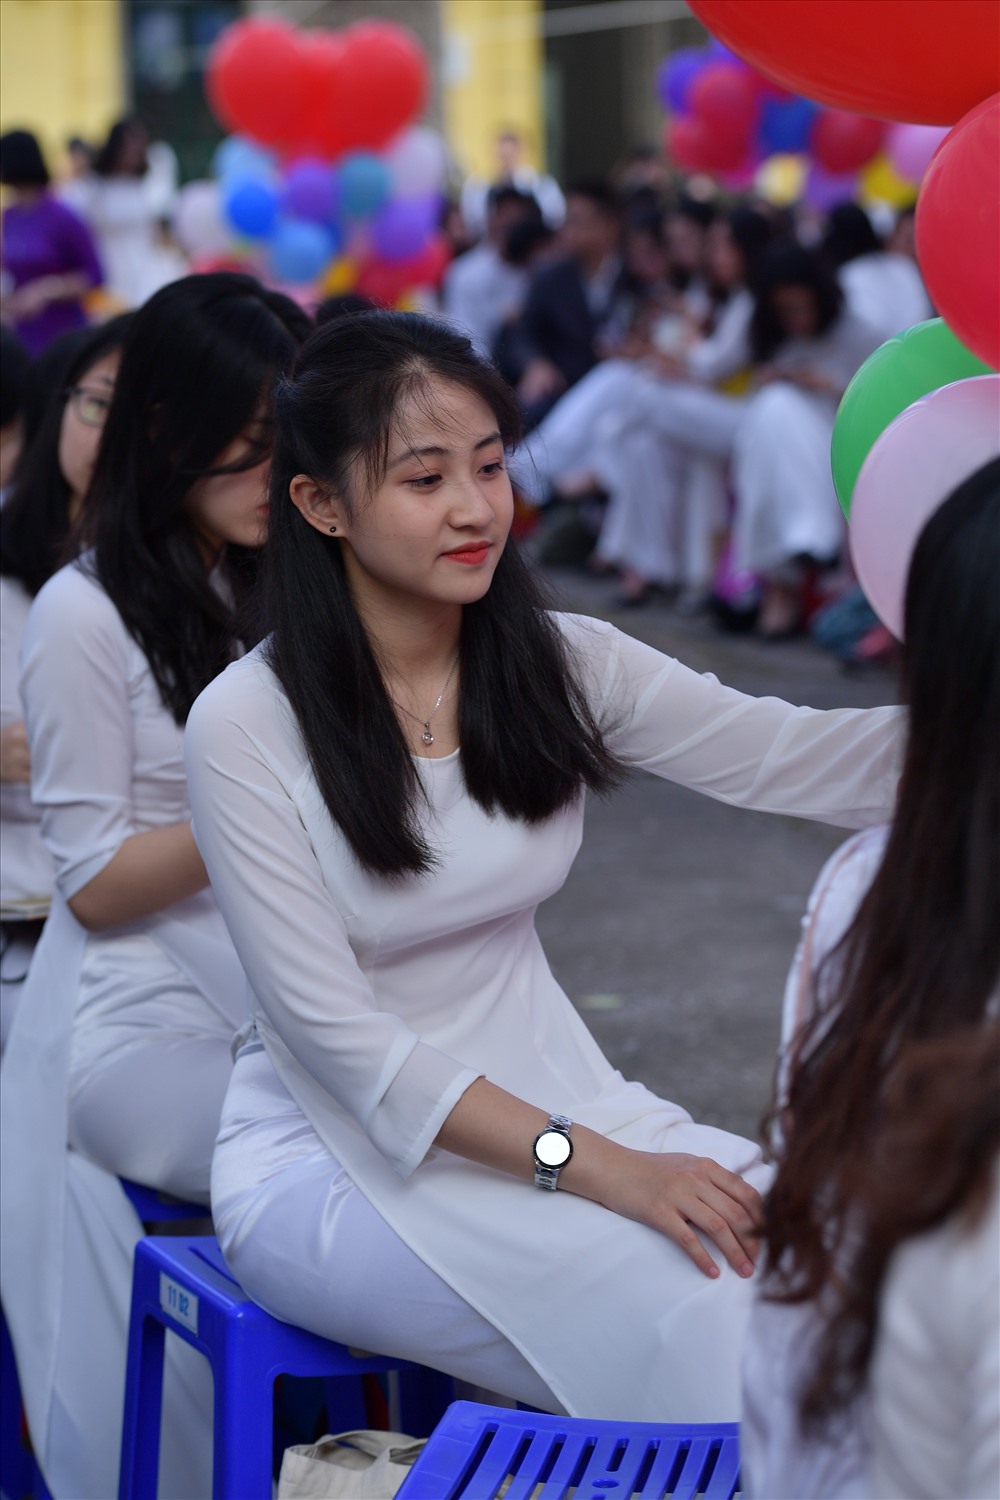 Vào ngày lễ đặc biệt này, nữ sinh ngôi trường lâu đời nhất Hà Nội đã xúng xính áo dài để cùng nhau lưu giữ những kỉ niệm dưới mái trường sau 3 năm gắn bó.